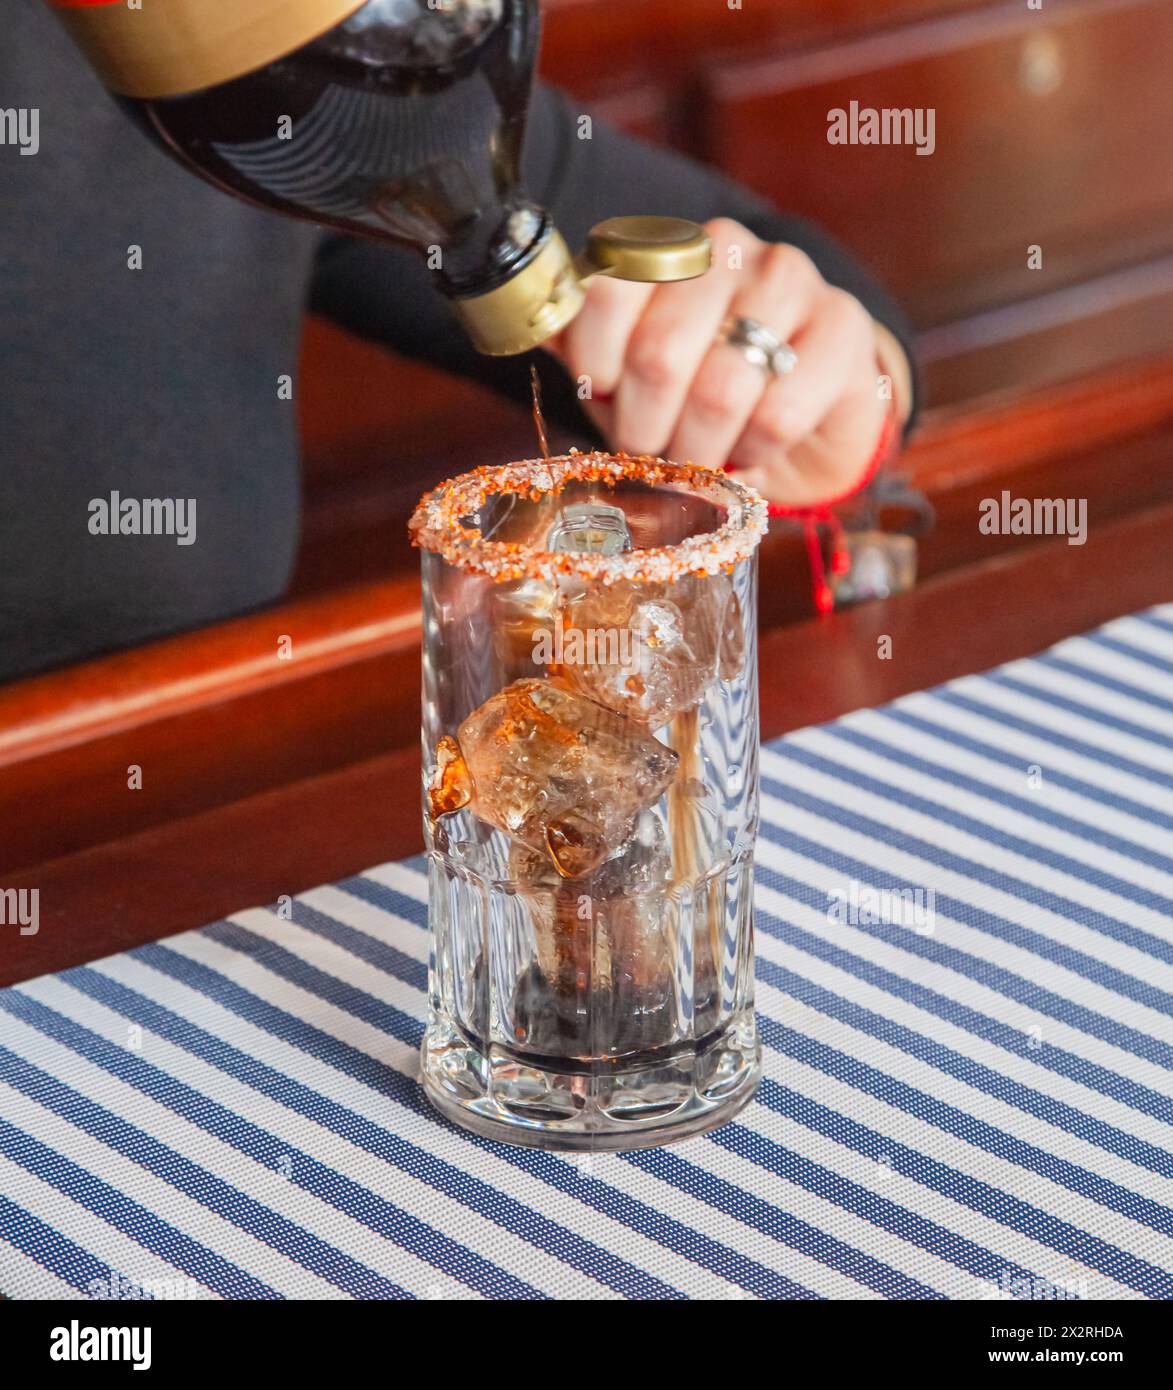 Bereiten Sie sich darauf vor, eine köstliche Bloody mary zu probieren, um sich in dieser heißen Jahreszeit abzukühlen. Stockfoto